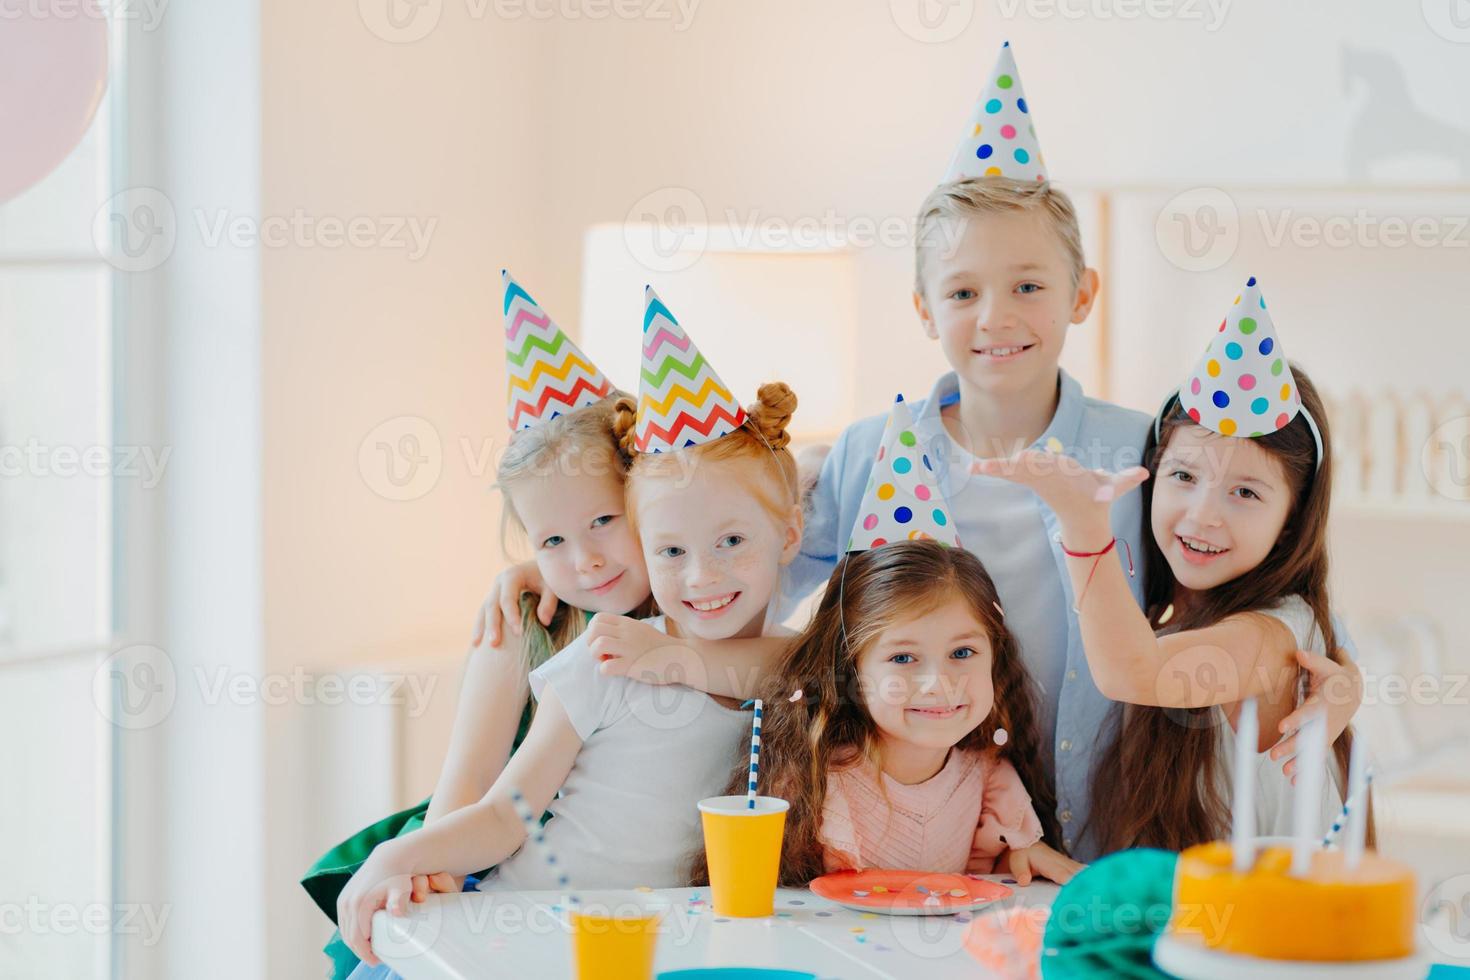 foto interna de crianças felizes celebram a festa com confetes caindo, usam chapéus de festa de cone, posam perto de uma mesa festiva com bolos, abraçam e posam juntos. aniversário infantil